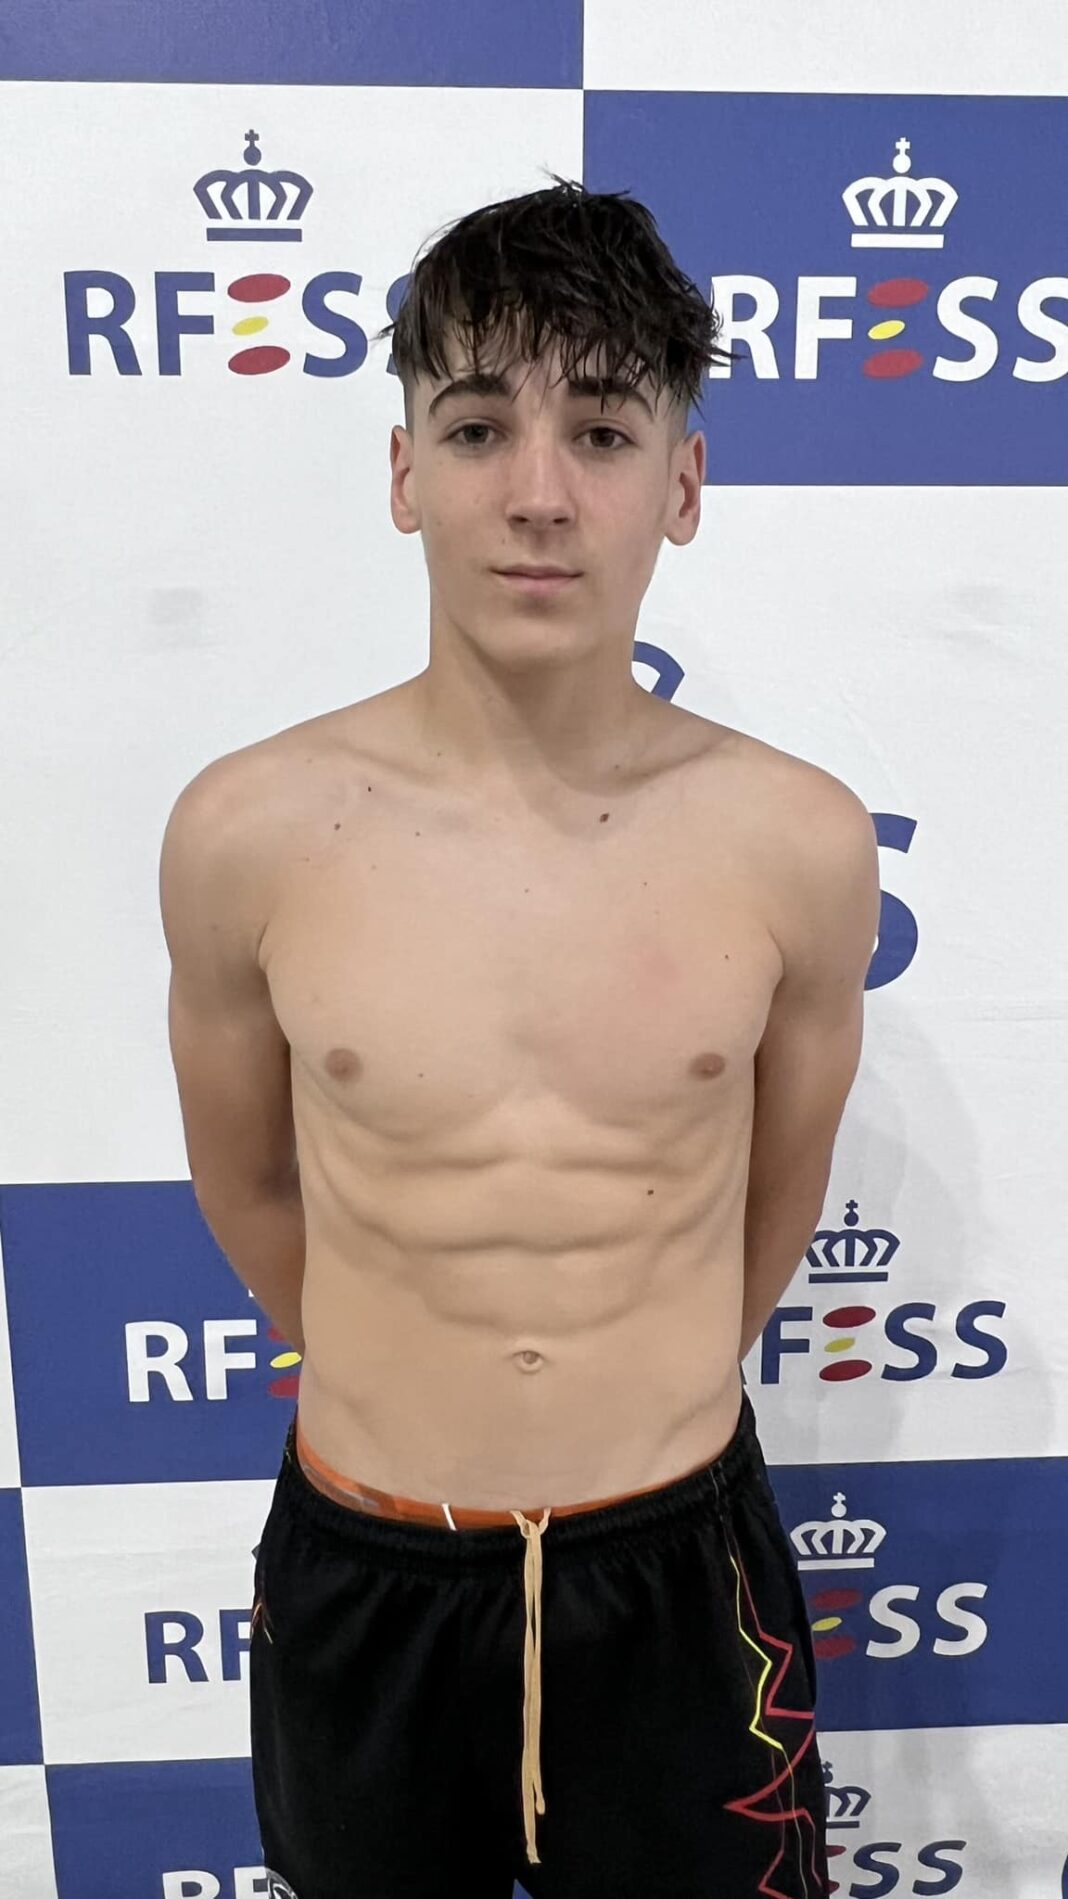 Diego Monge Mahcho (Club Actividades Acuáticas Calatayud) – Récord de España 50 metros remolque de maniquí en categoría cadete masculina (00:34:88 frente a 00:35:11).